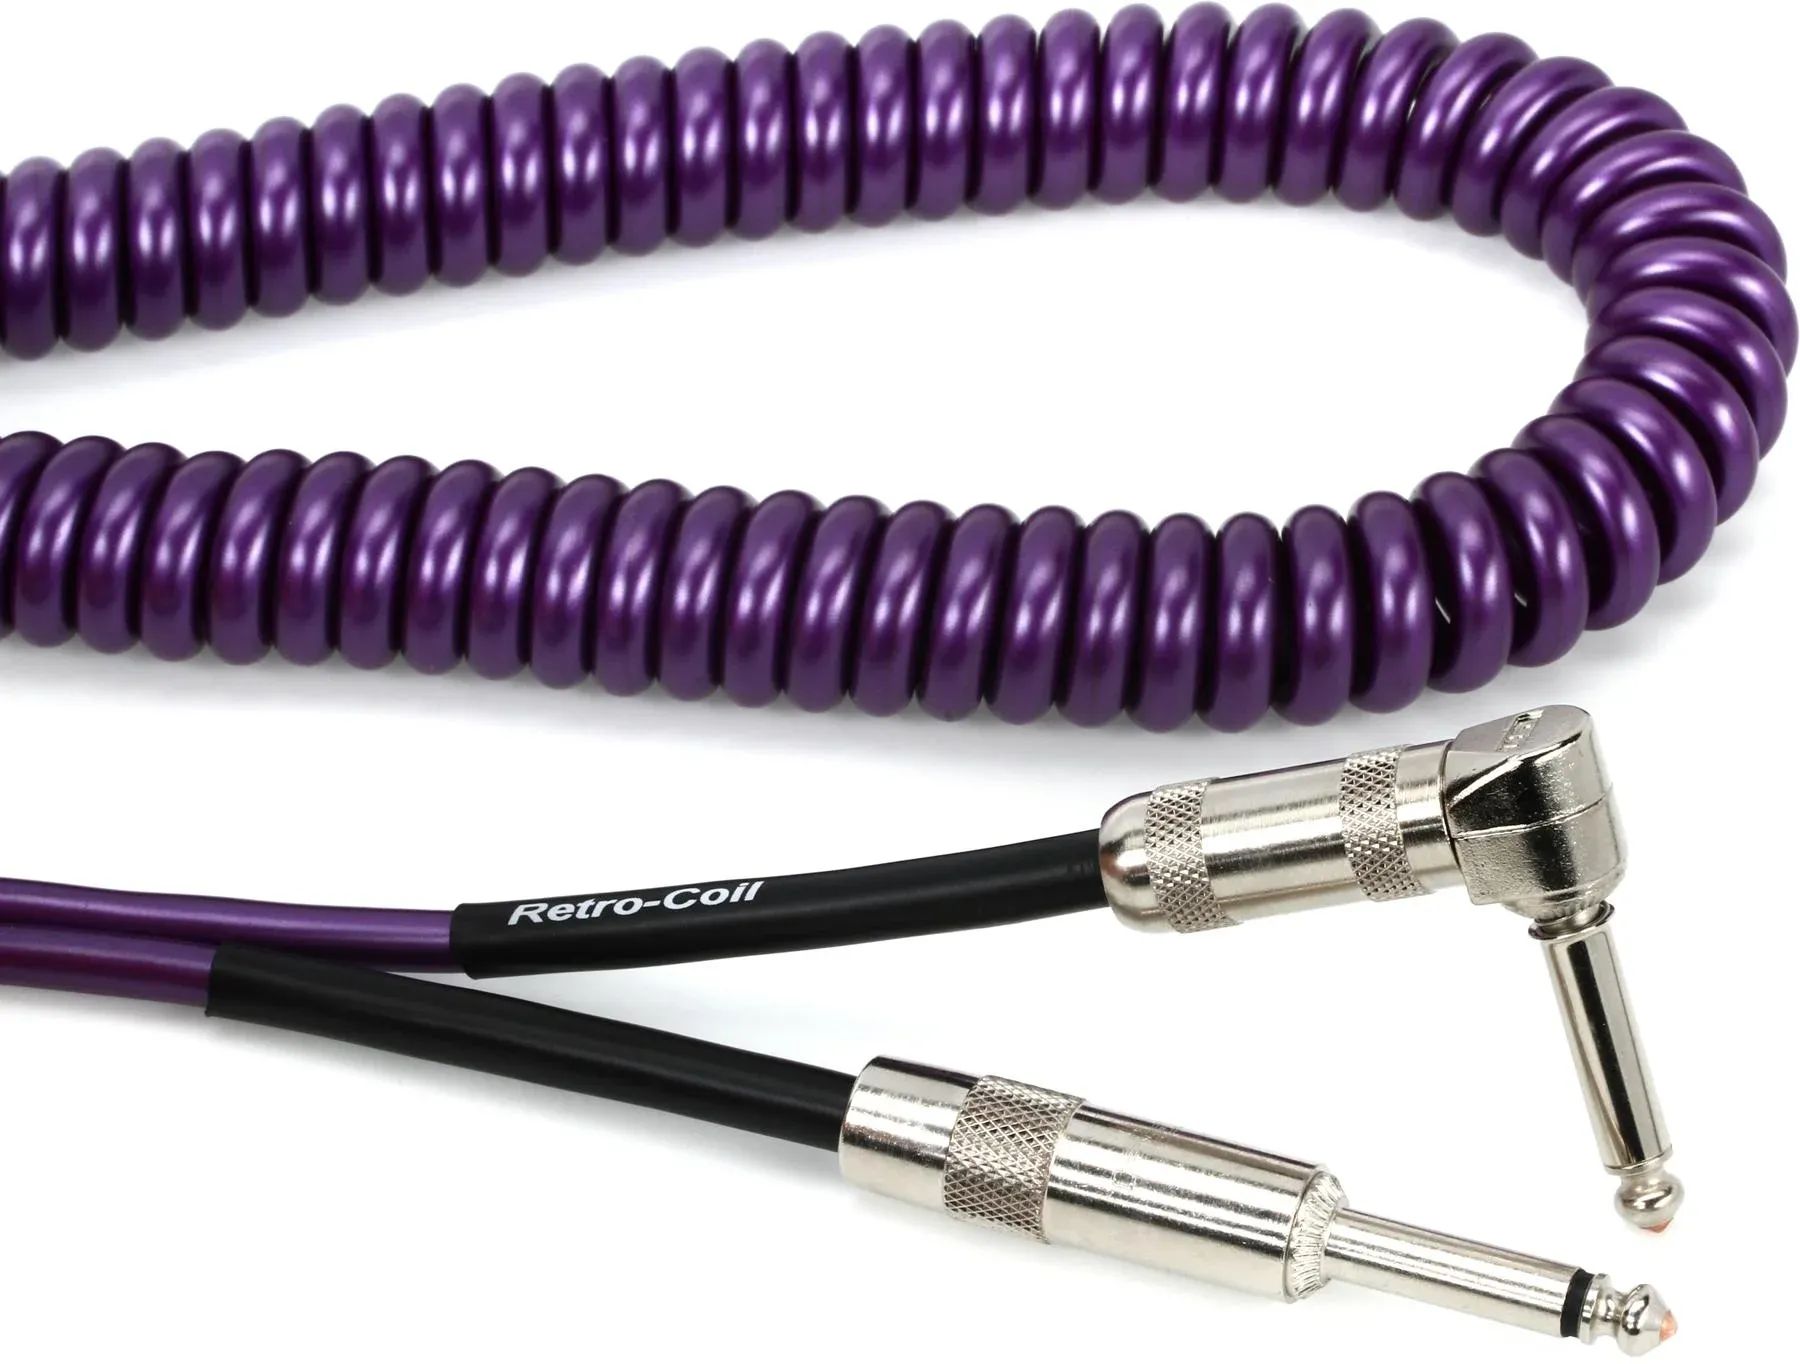 

Лавовый кабель LCRCRMPS Ретро-катушка, прямой и угловой бесшумный инструментальный кабель — 20 футов, фиолетовый металлик